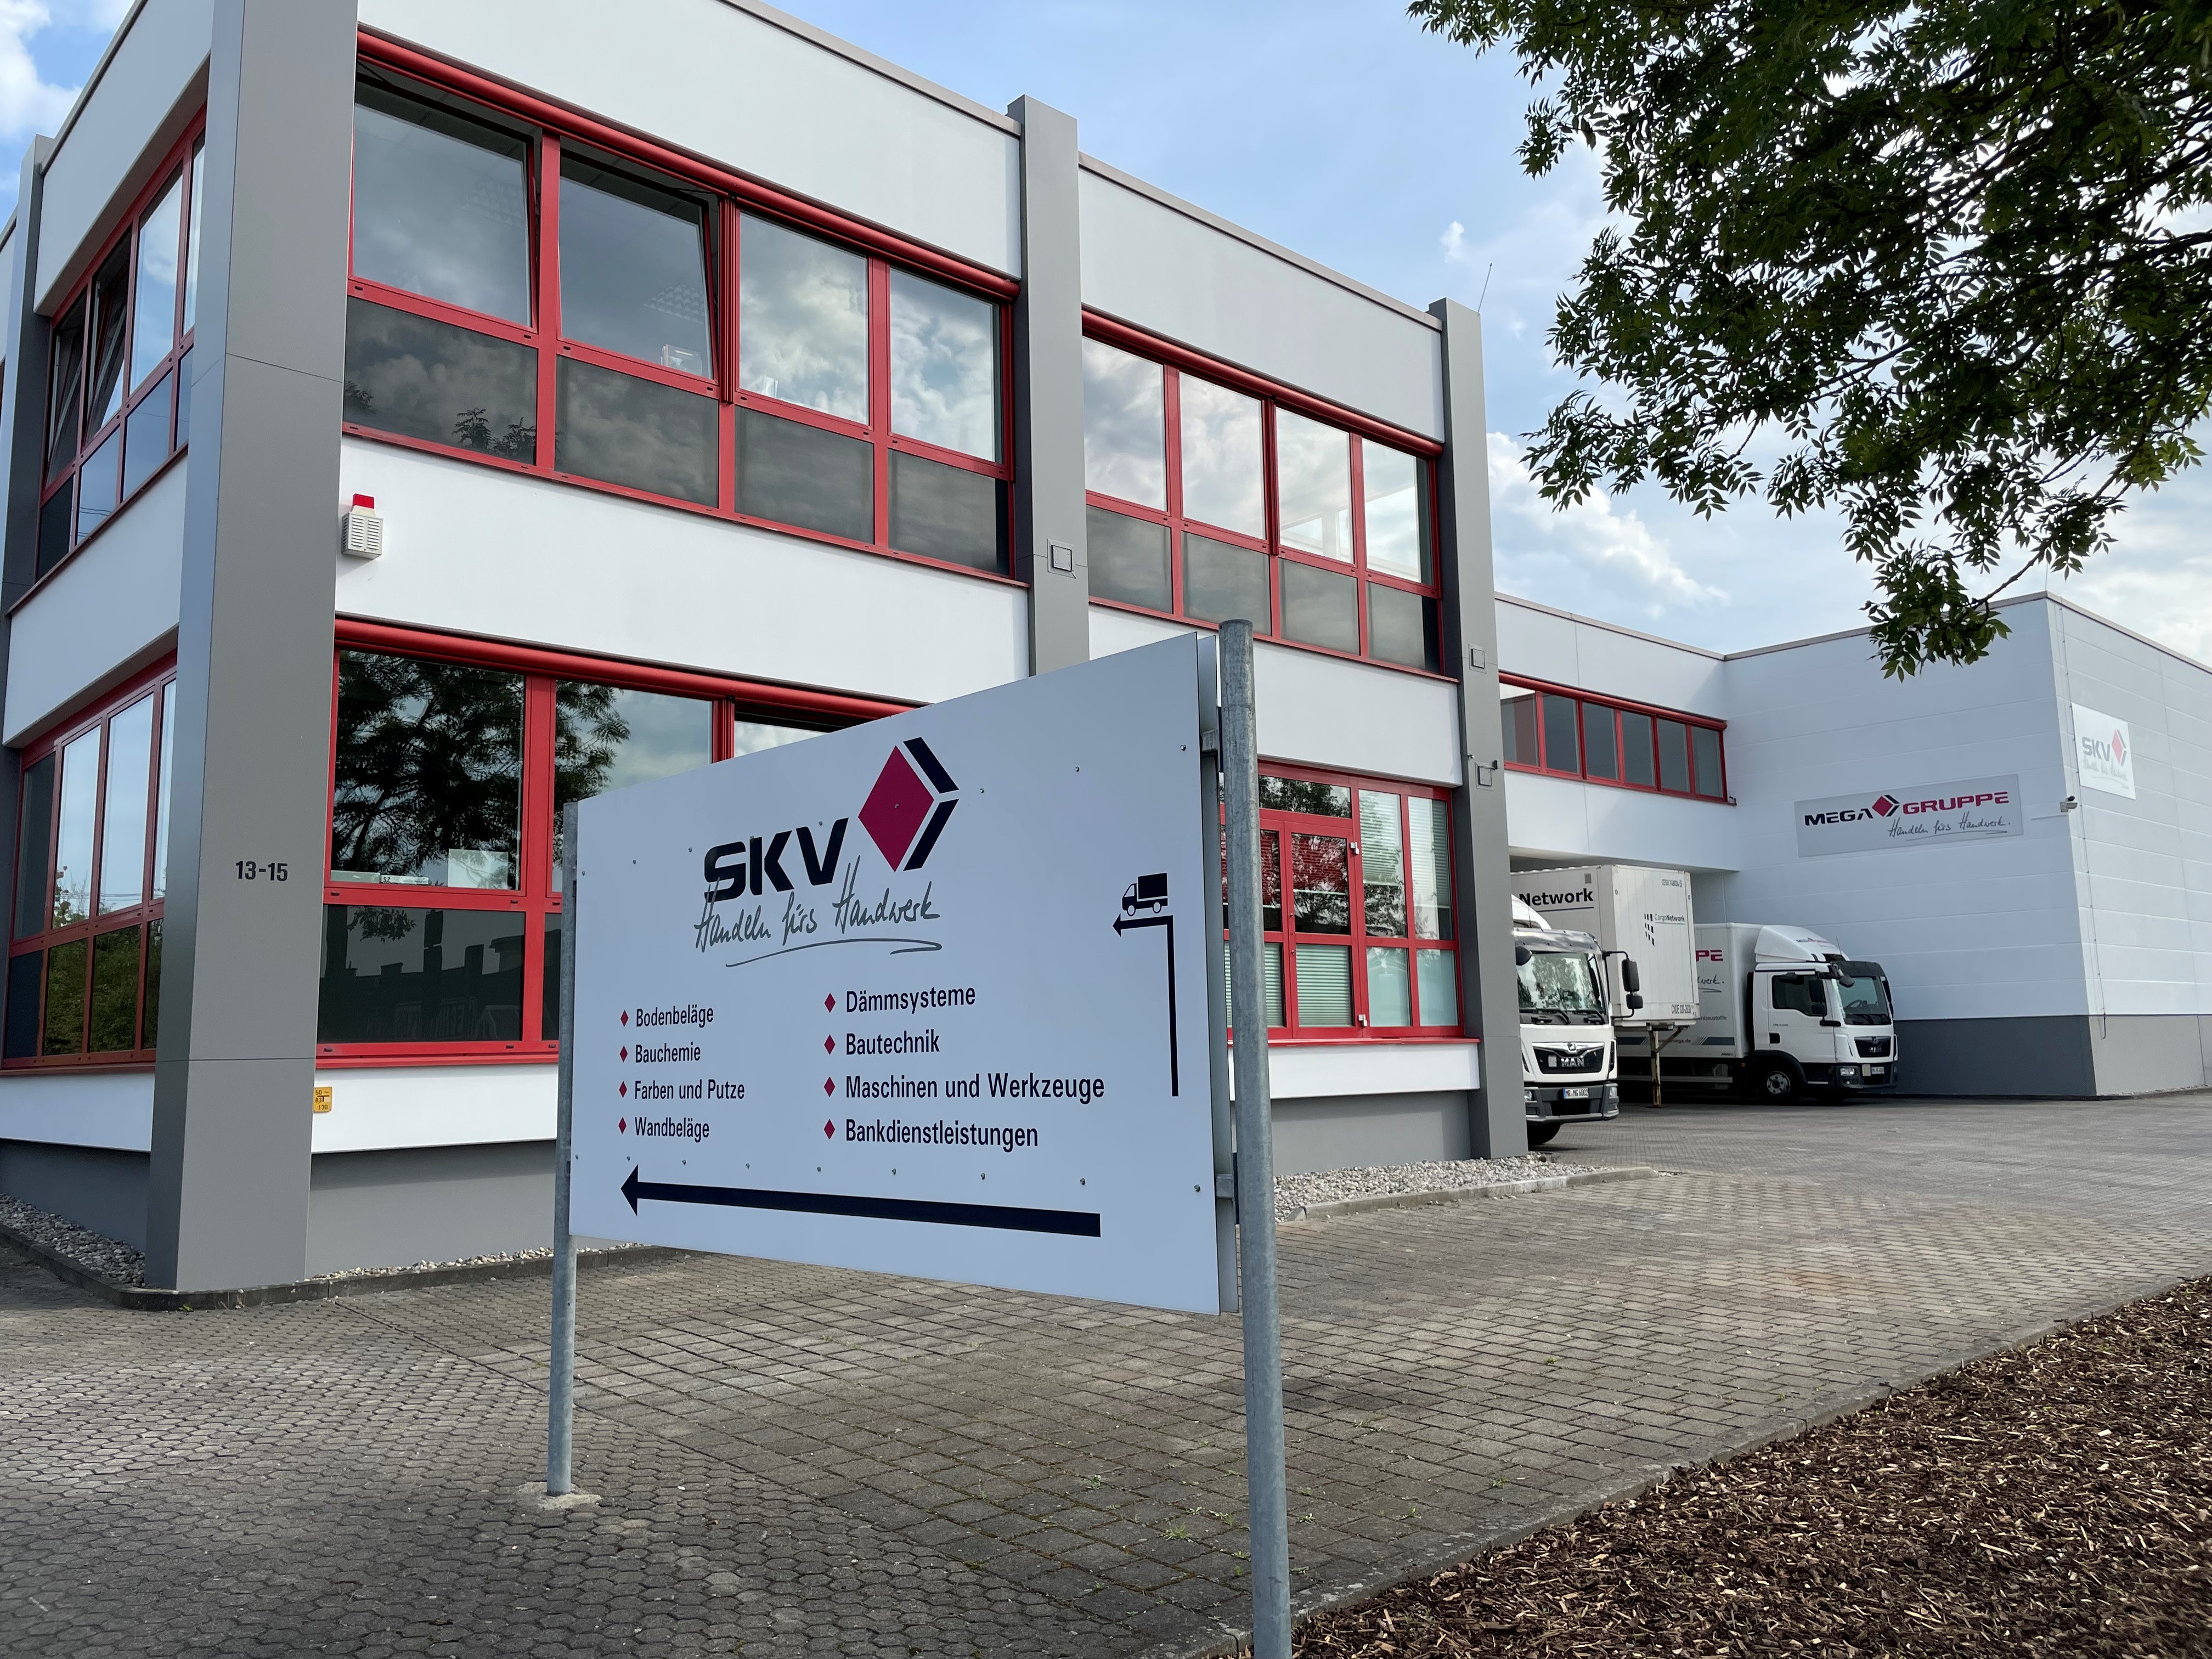 Standortbild SKV GmbH Fulda, Großhandel für Maler, Bodenleger und Stuckateure